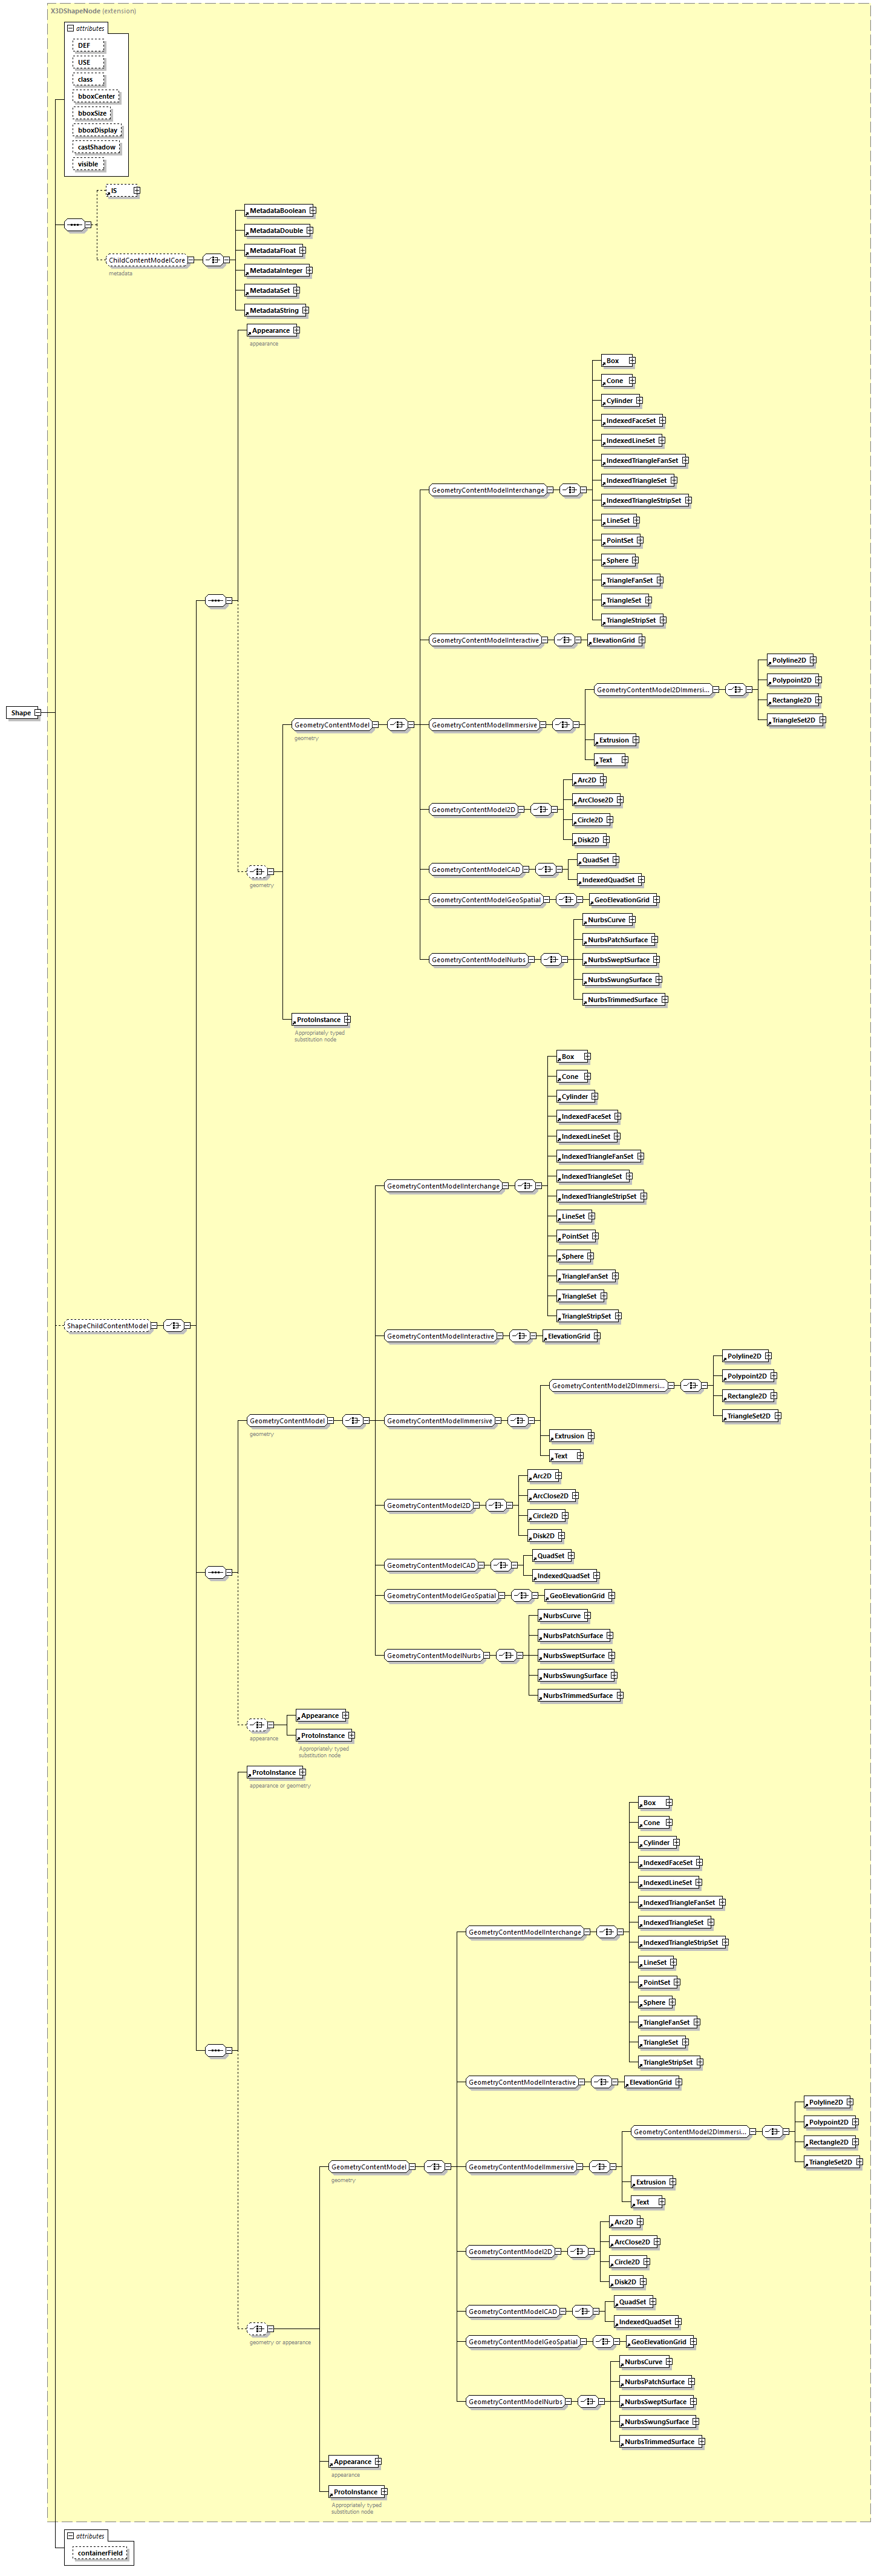 x3d-4.0_diagrams/x3d-4.0_p218.png